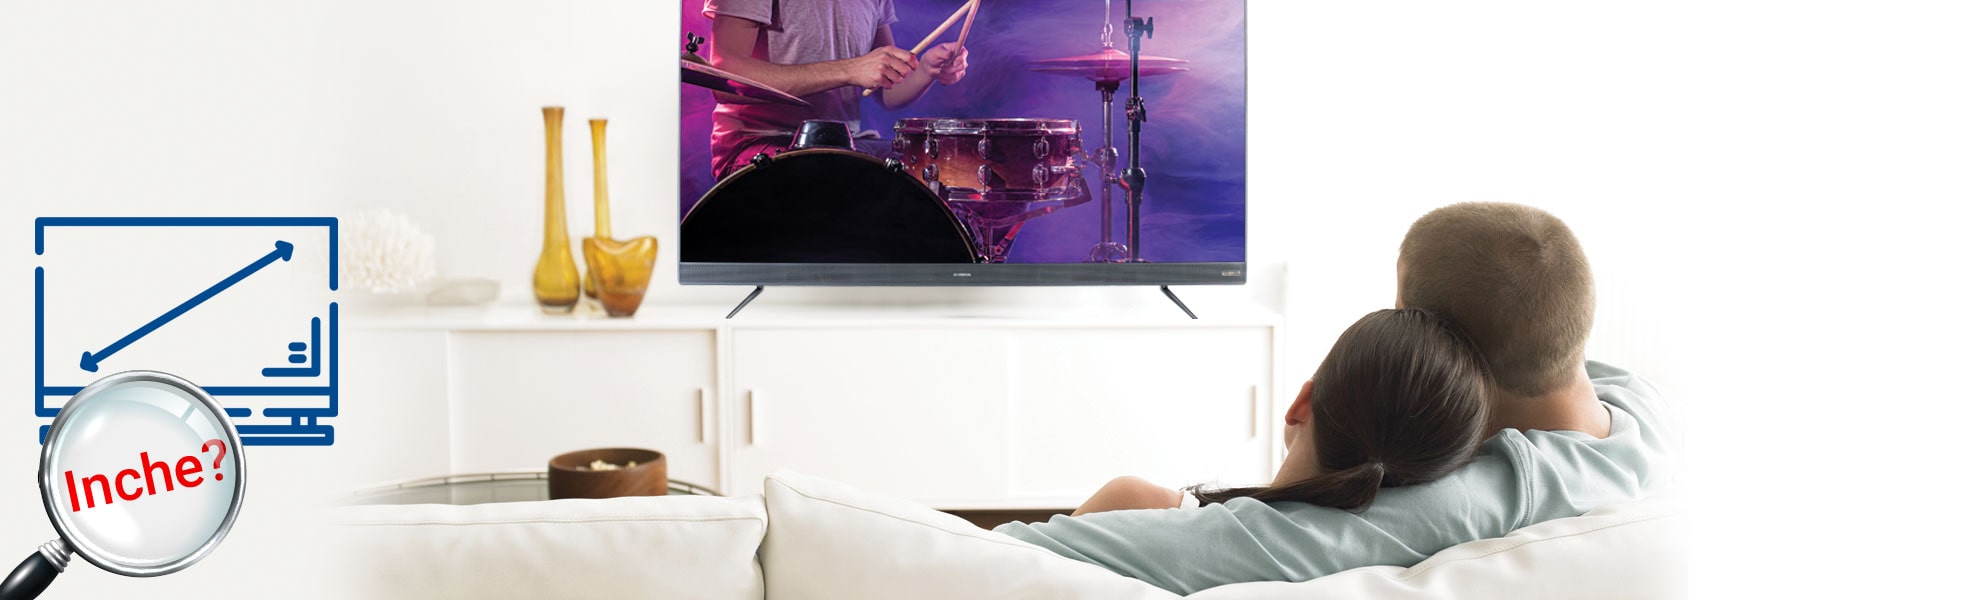 بهترین راهکار برای انتخاب سایز تلویزیون مناسب | راهنمای انتخاب سایز